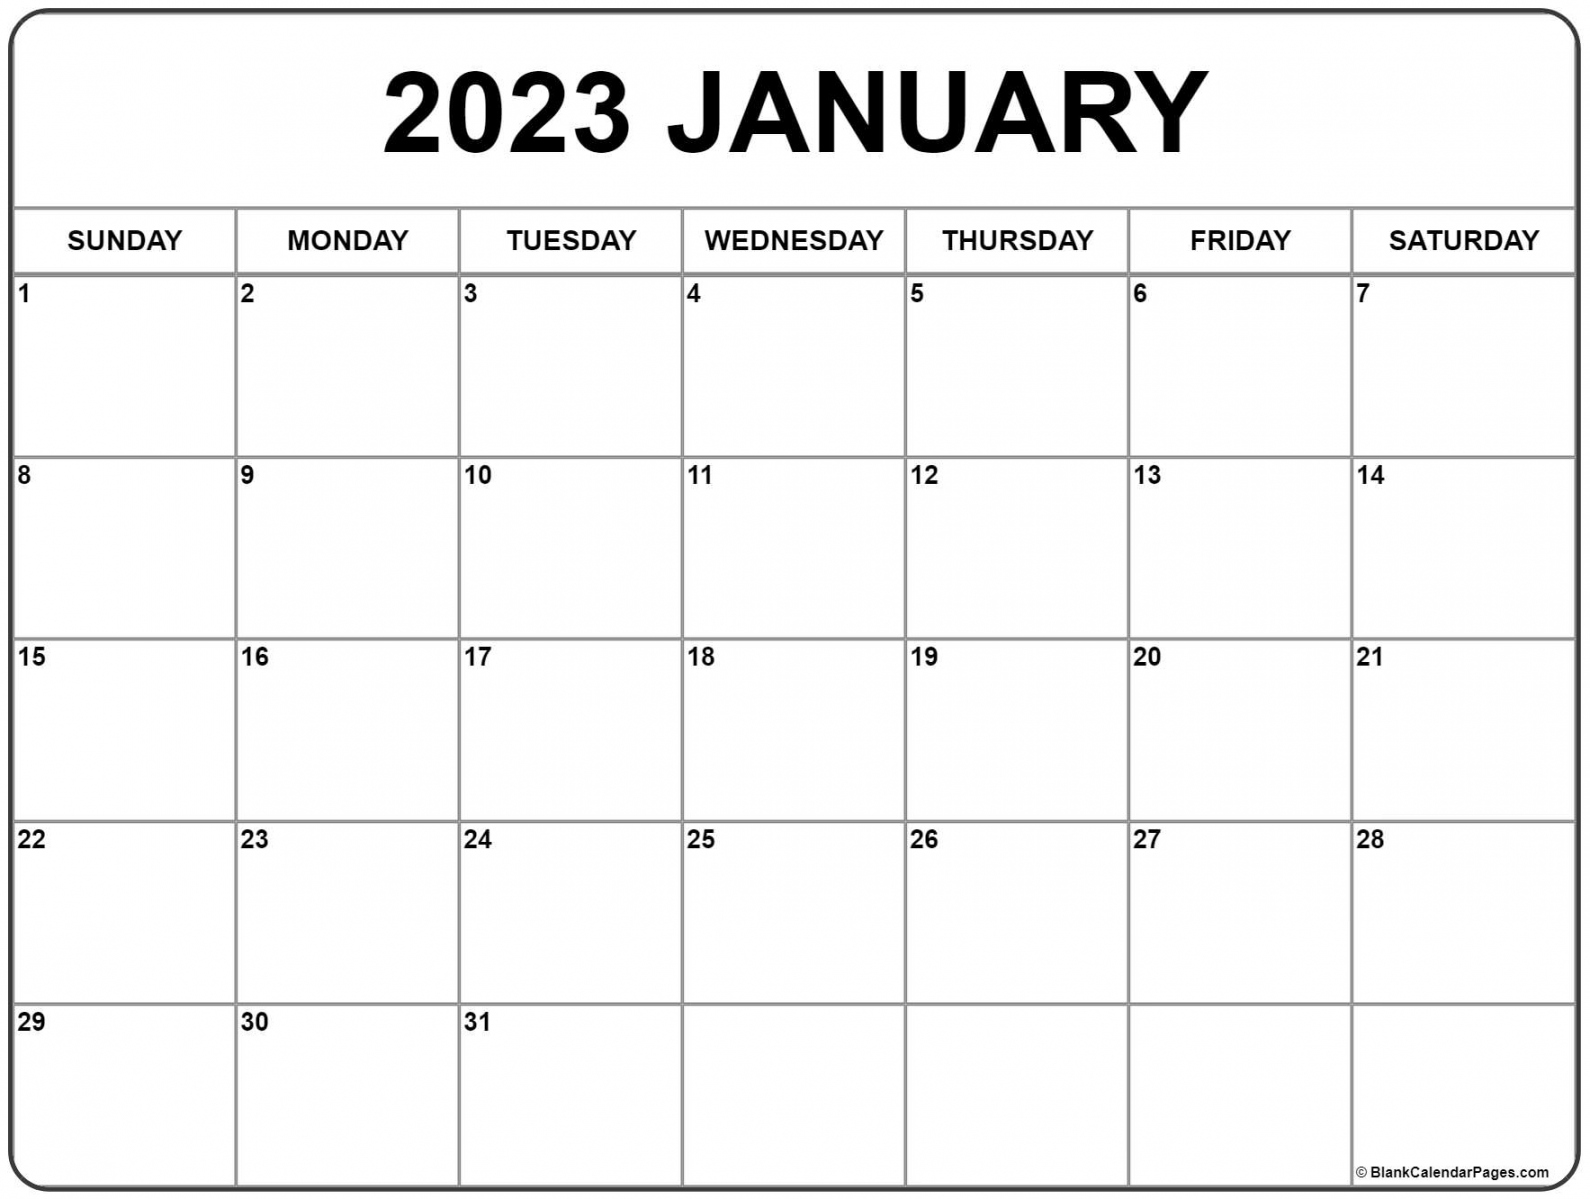 Free 2023 Printable Calendar - Printable - January  calendar  free printable calendar